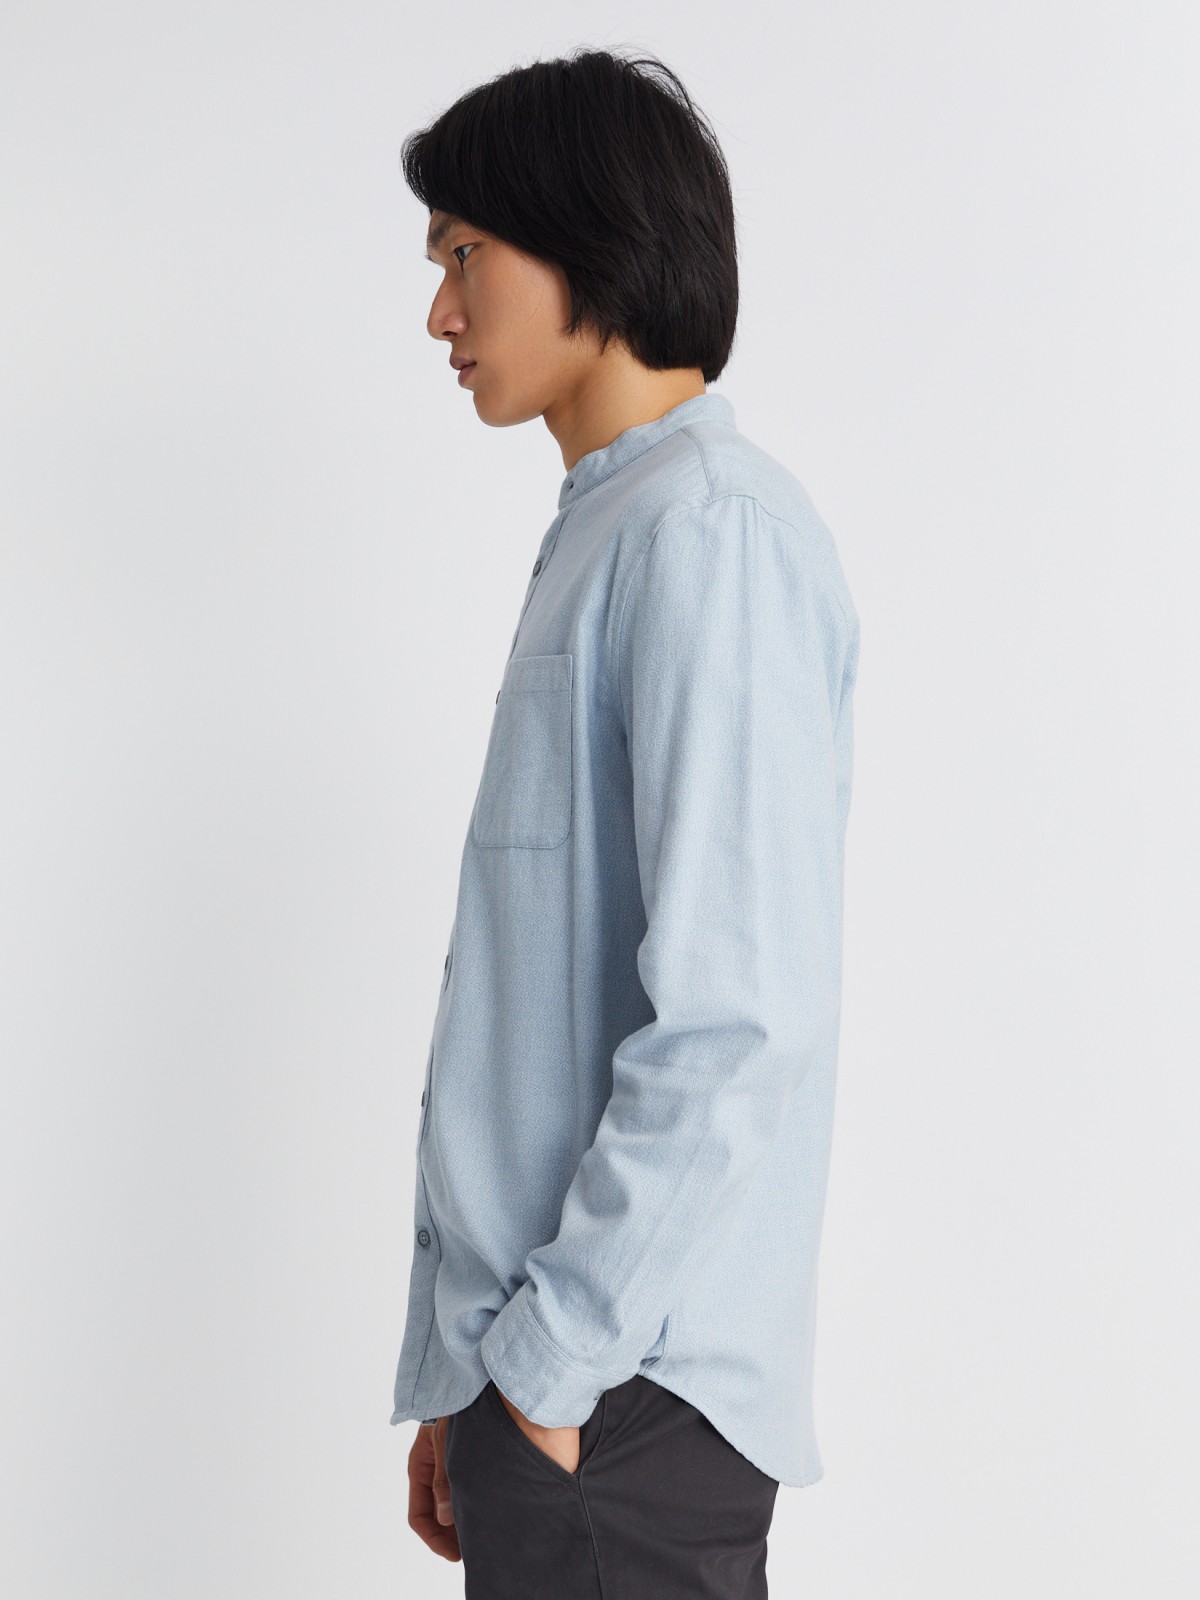 Фланелевая рубашка из хлопка с воротником-стойкой и длинным рукавом zolla 013332162013, цвет светло-голубой, размер S - фото 4